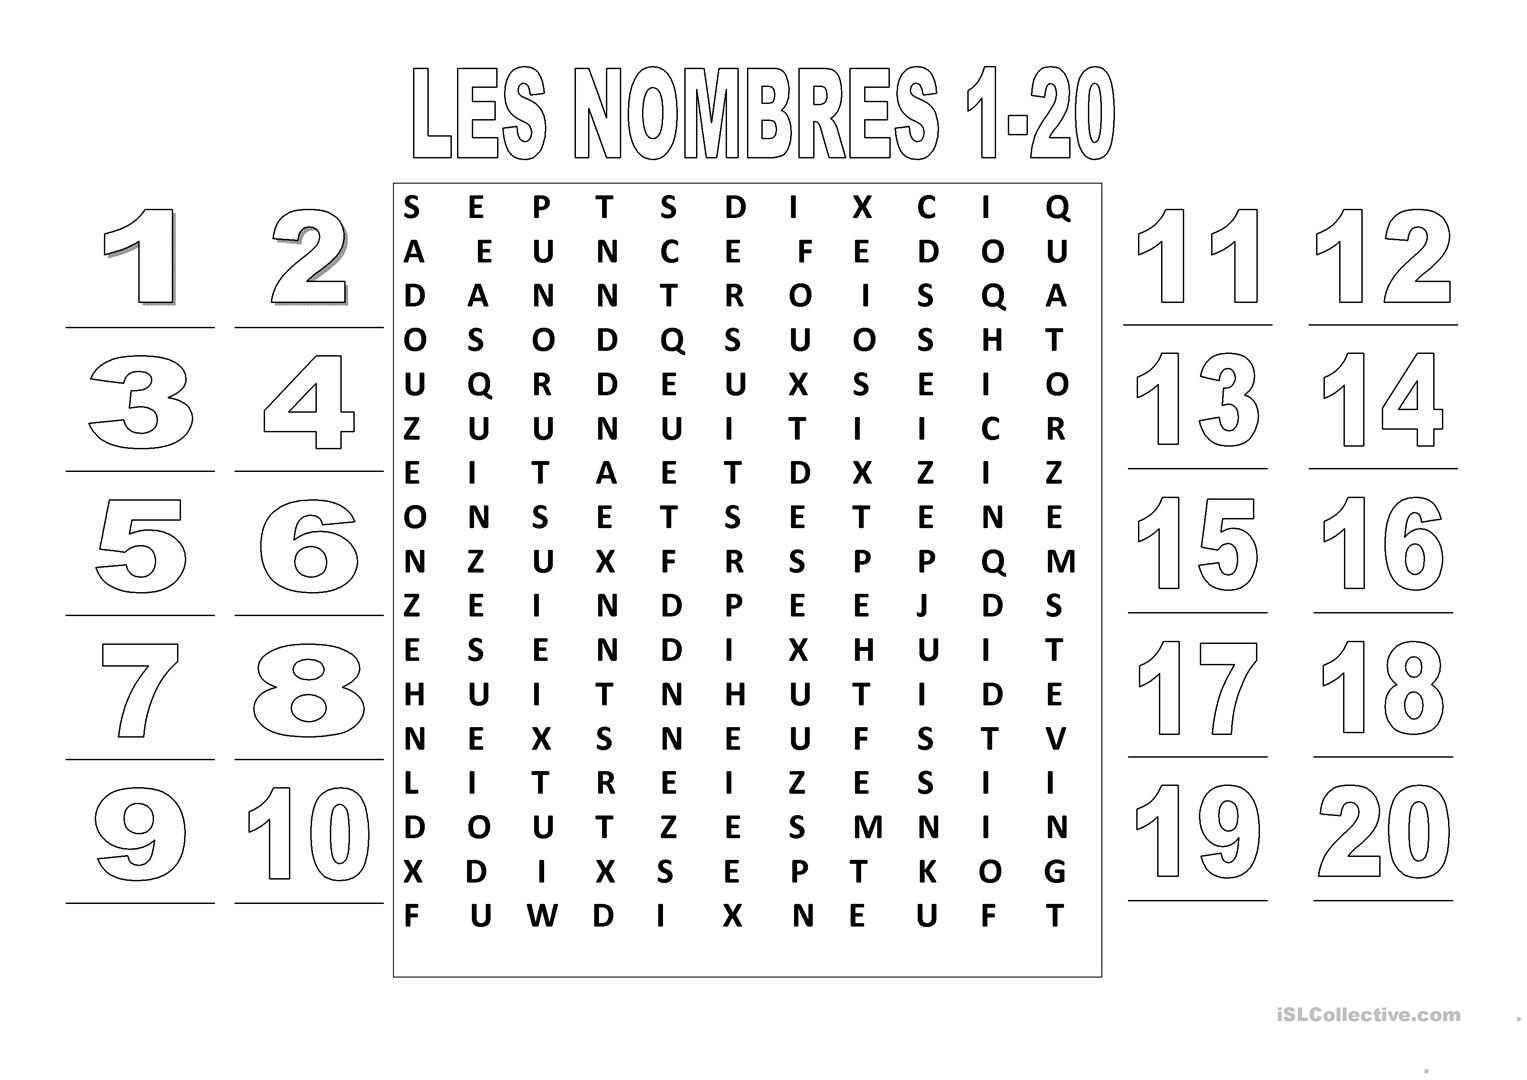 Les Nombres 1-20 (Mots Croisés) - Français Fle Fiches encequiconcerne Mots Croisés A Imprimer Gratuit